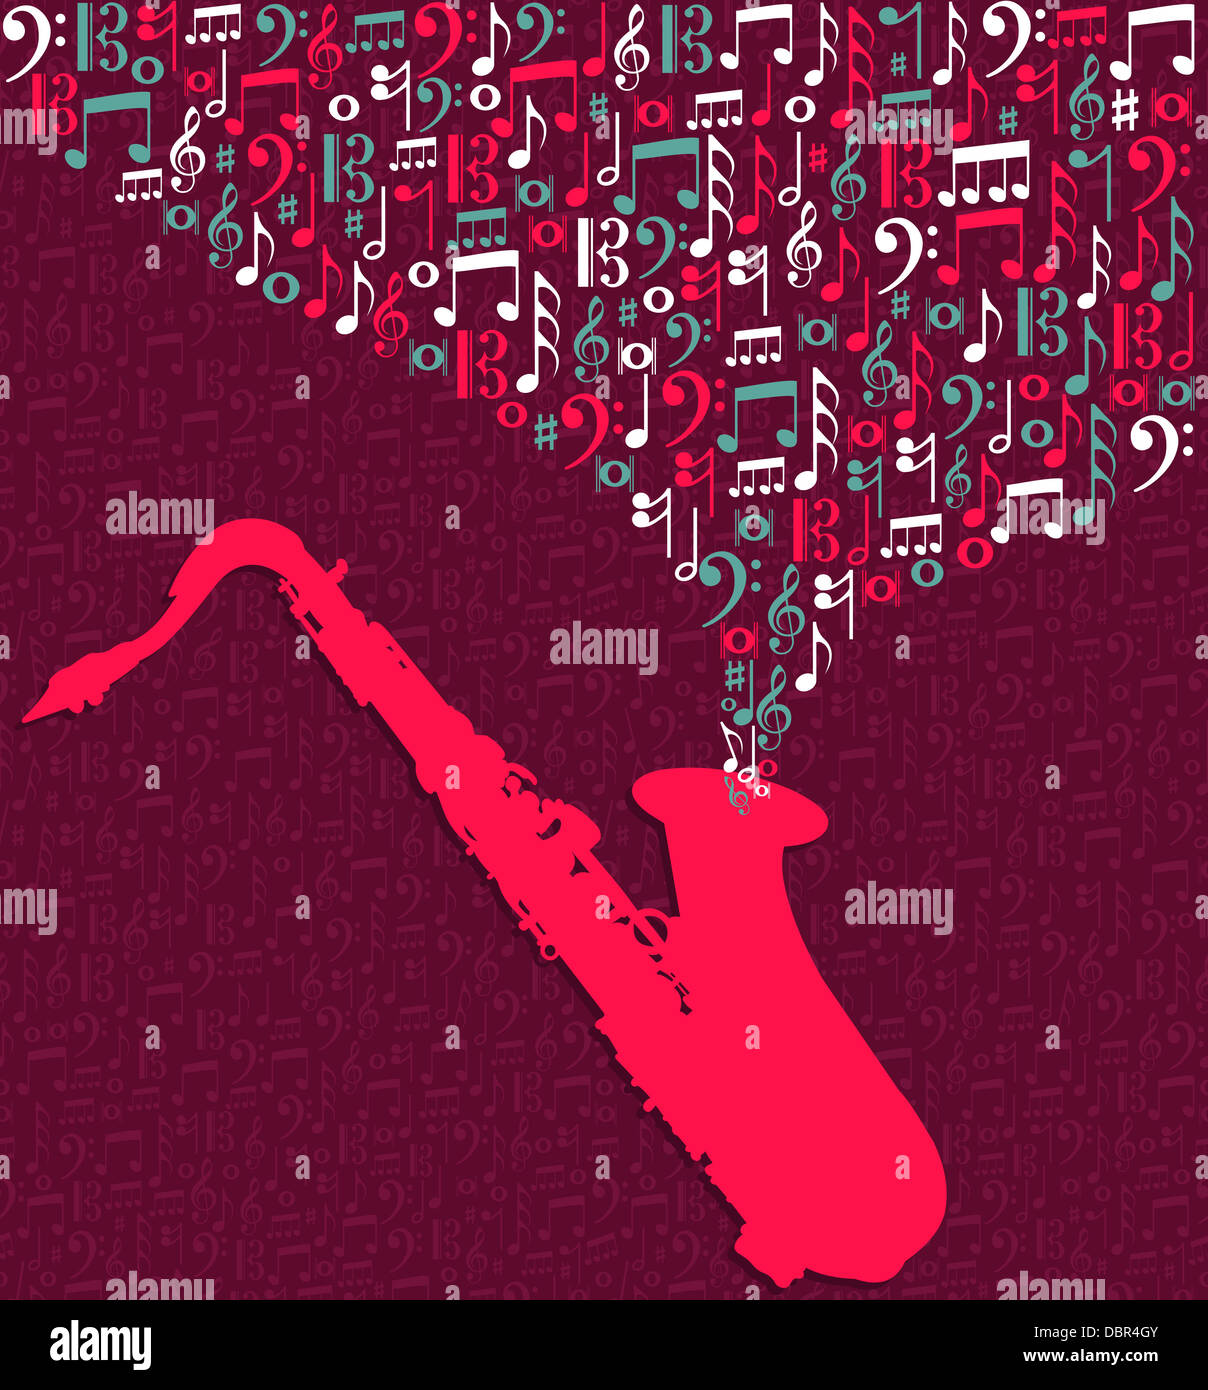 Bunte Noten Saxophon Spritzen Abbildung. Vektor-Datei geschichtet für einfache Handhabung und individuelle Farbgebung. Stockfoto